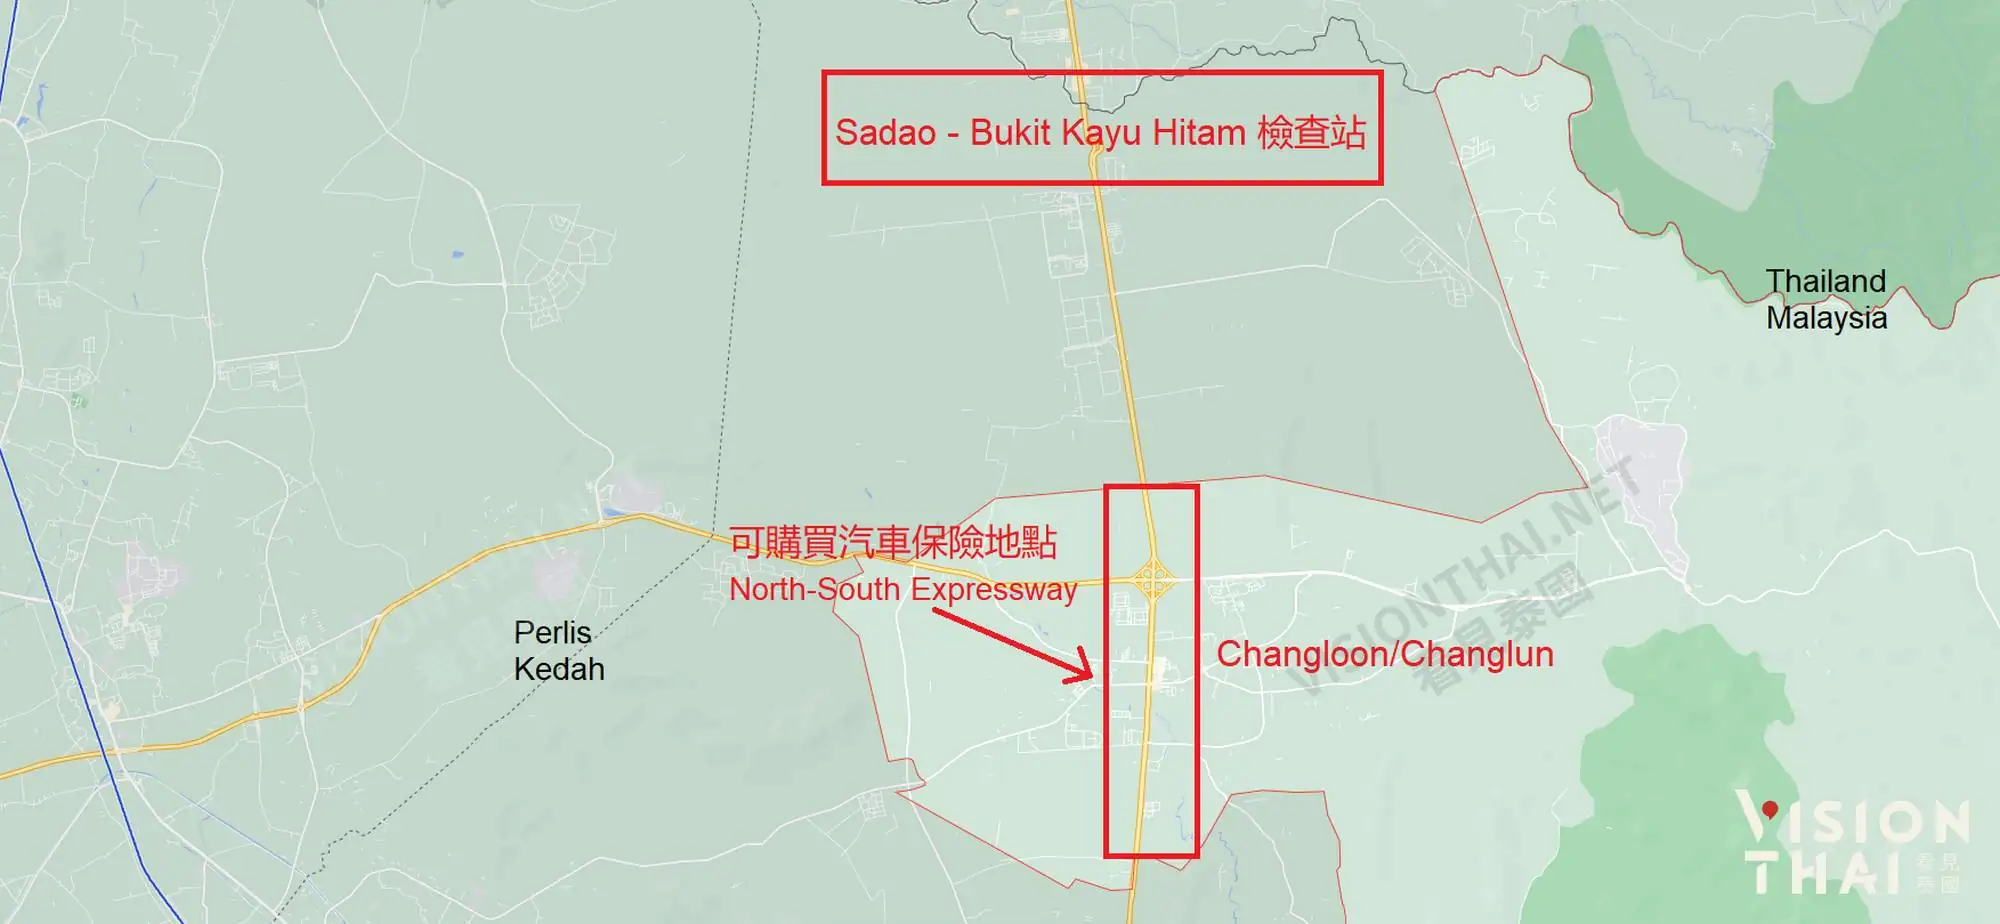 嶂伦(Changlun)可購買保險地點（圖片來源：Google Maps）